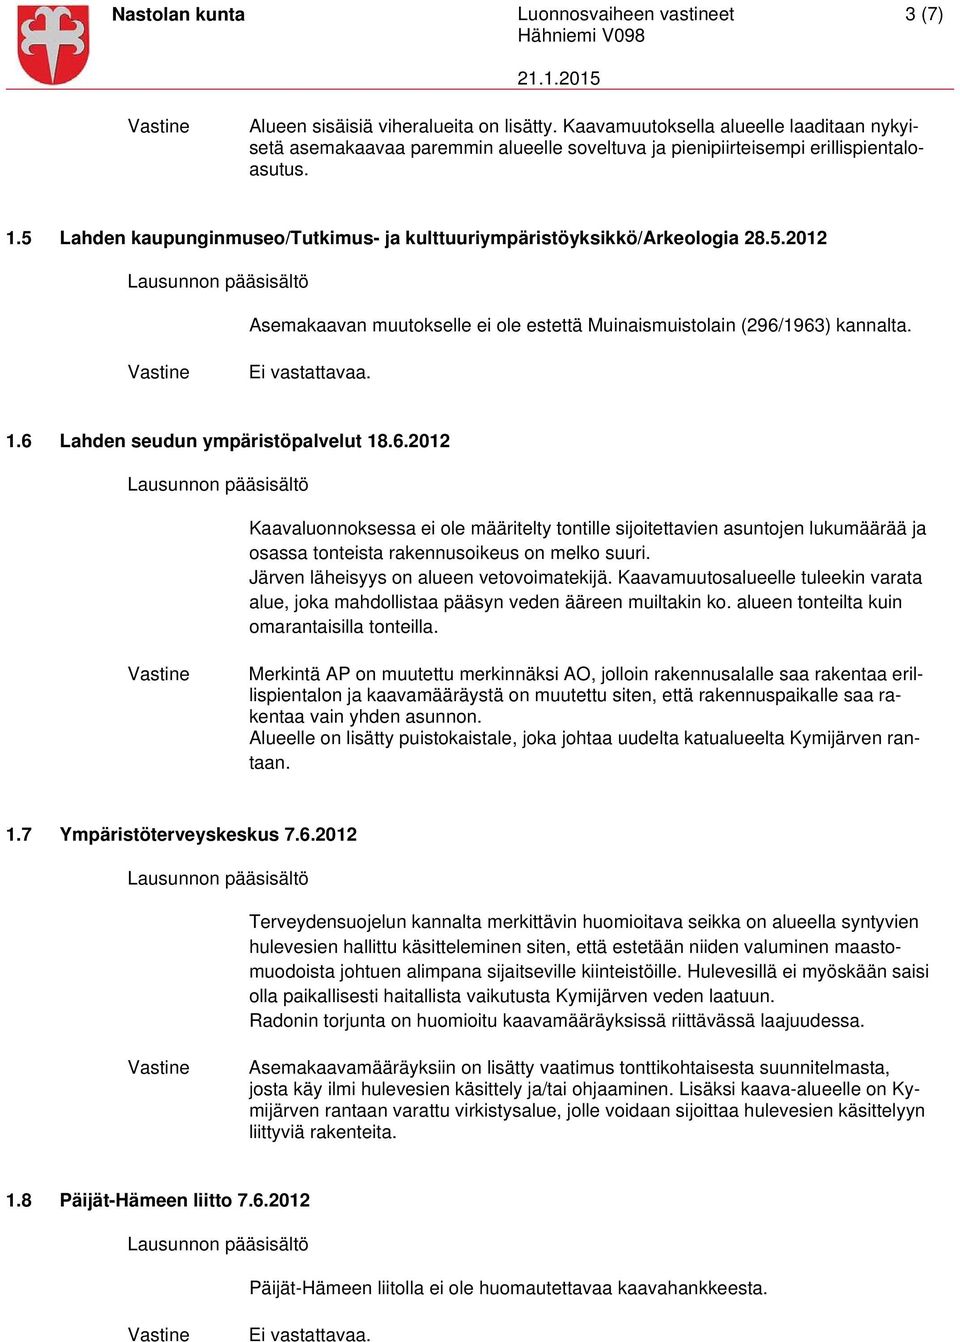 5 Lahden kaupunginmuseo/tutkimus- ja kulttuuriympäristöyksikkö/arkeologia 28.5.2012 Asemakaavan muutokselle ei ole estettä Muinaismuistolain (296/1963) kannalta. Ei vastattavaa. 1.